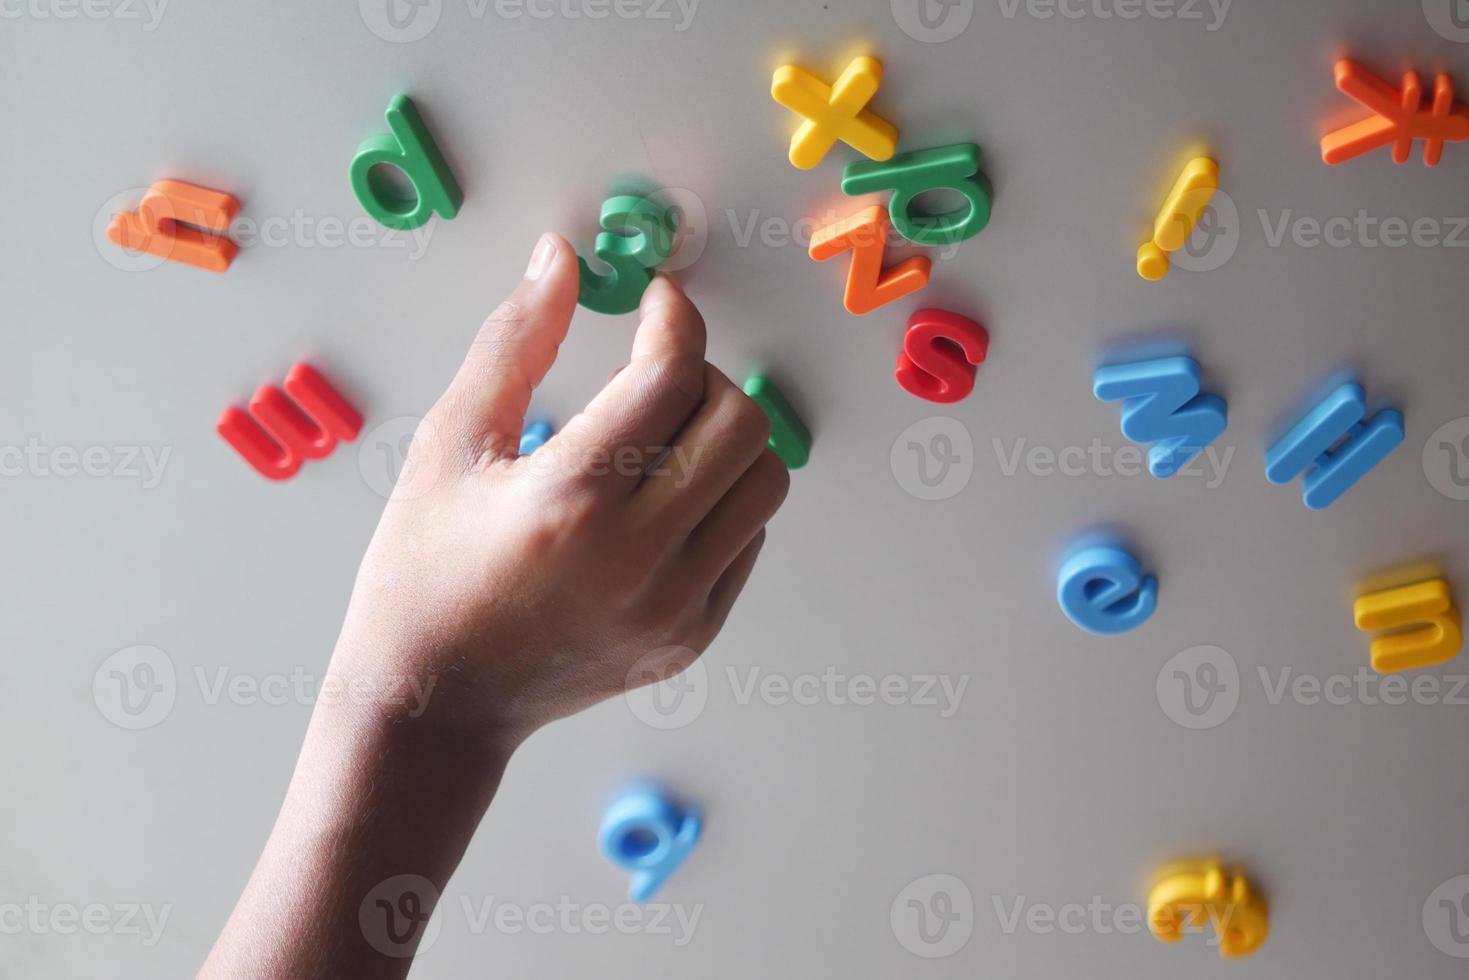 criança menino organizando letras de plástico coloridas em uma geladeira foto